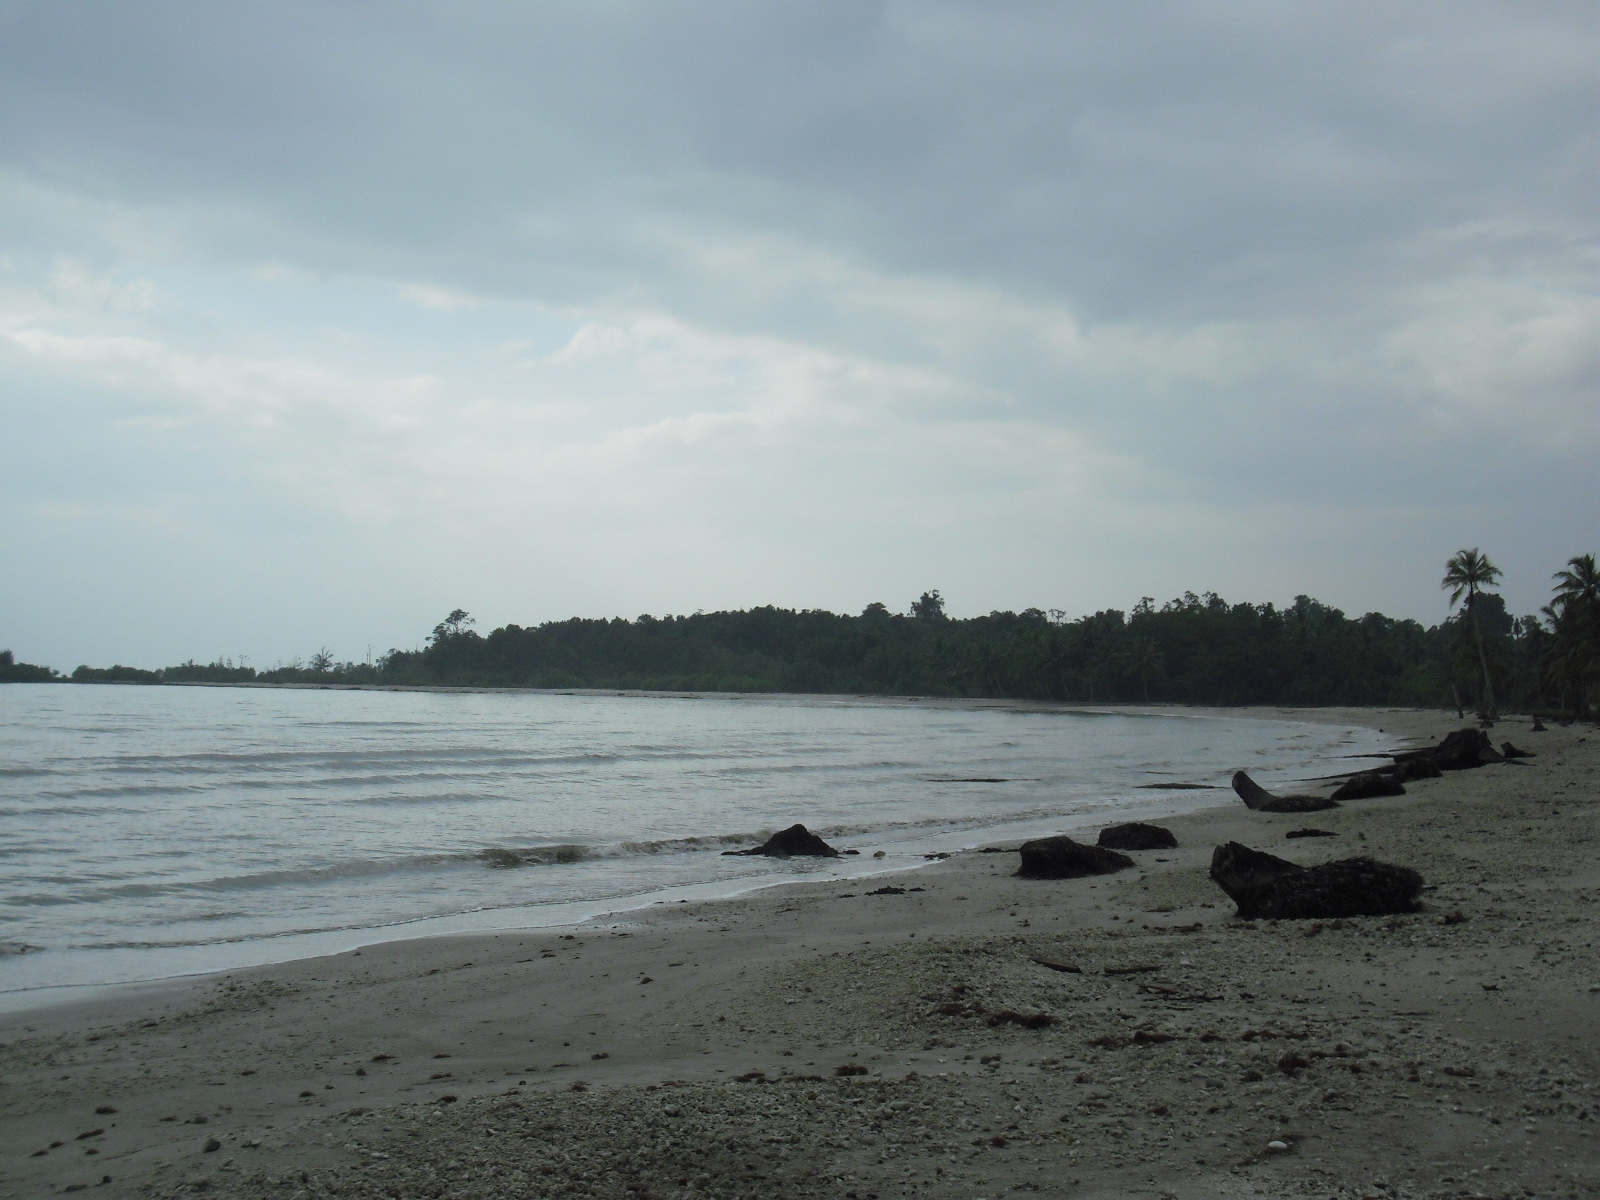 Pantai Mentawai